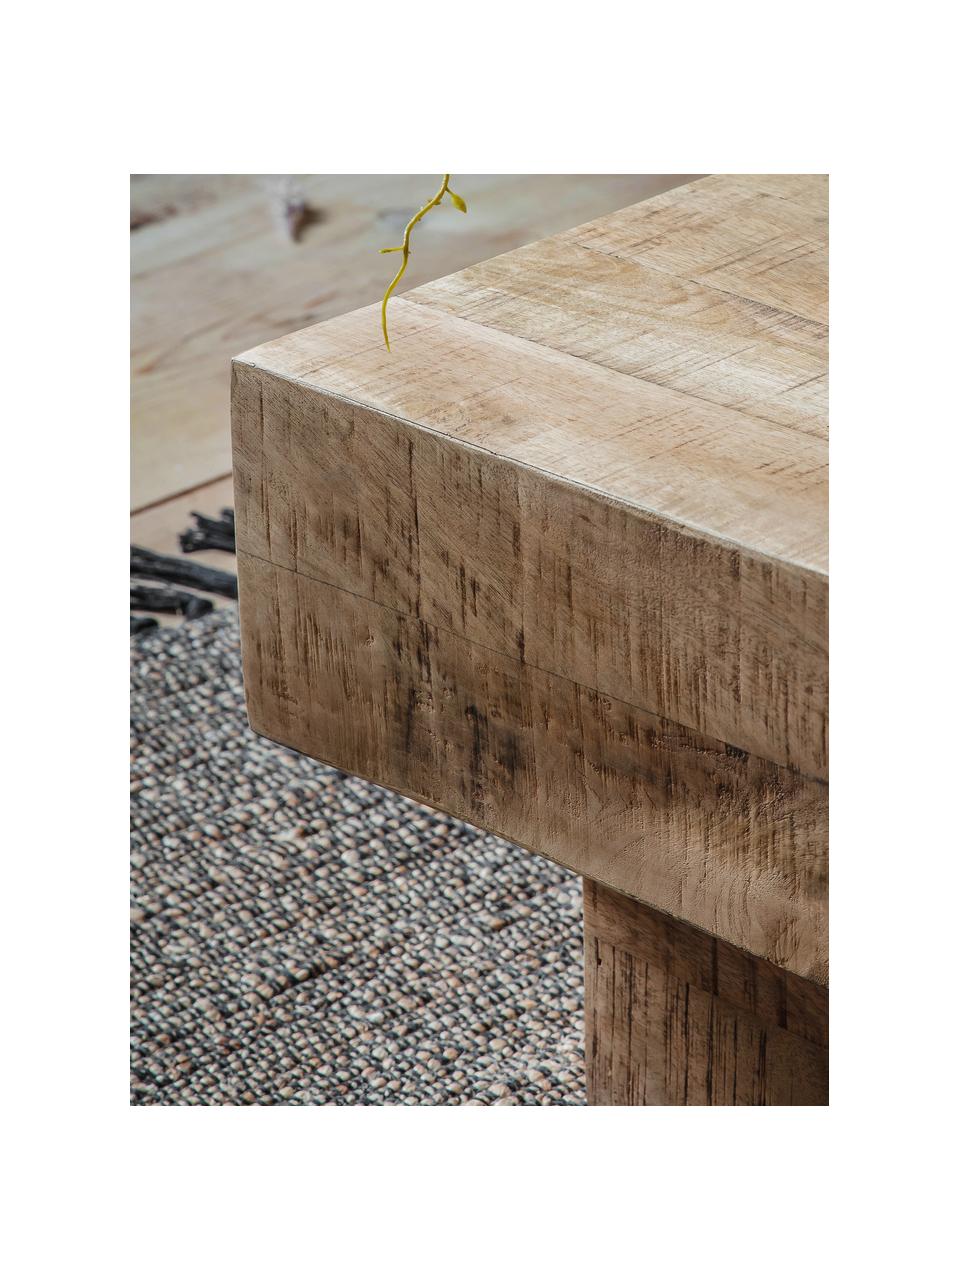 Konferenční stolek z mangového dřeva Iowa, Lakované mangové dřevo

Vzhledem k tomu, že se jedná o přírodní materiály, může se výrobek lišit od vyobrazení. Každý výrobek je jedinečný!, Mangové dřevo, Š 150 cm, H 60 cm